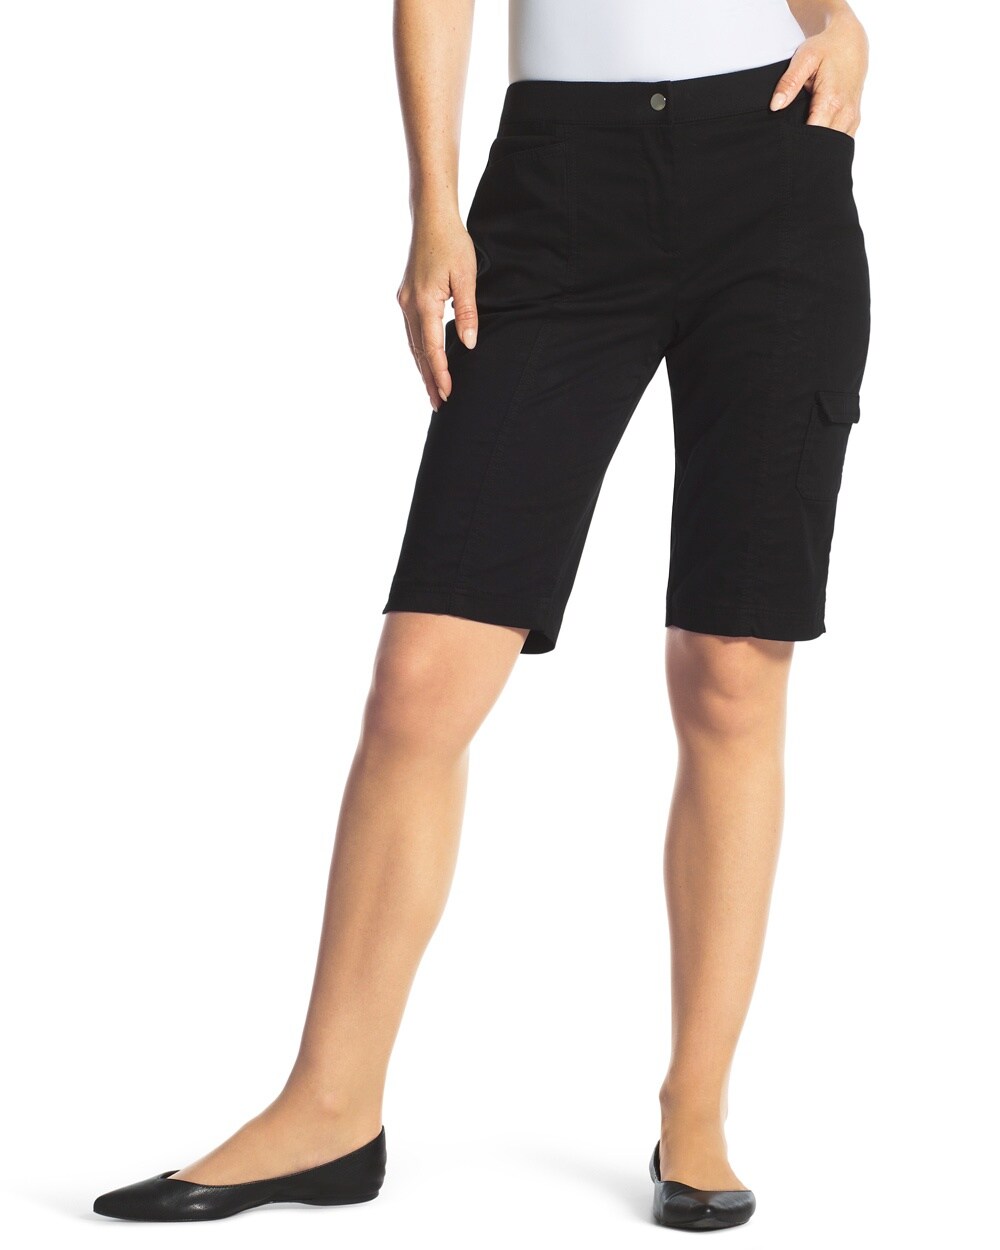 Zenergy Gianna Side-Pocket Shorts